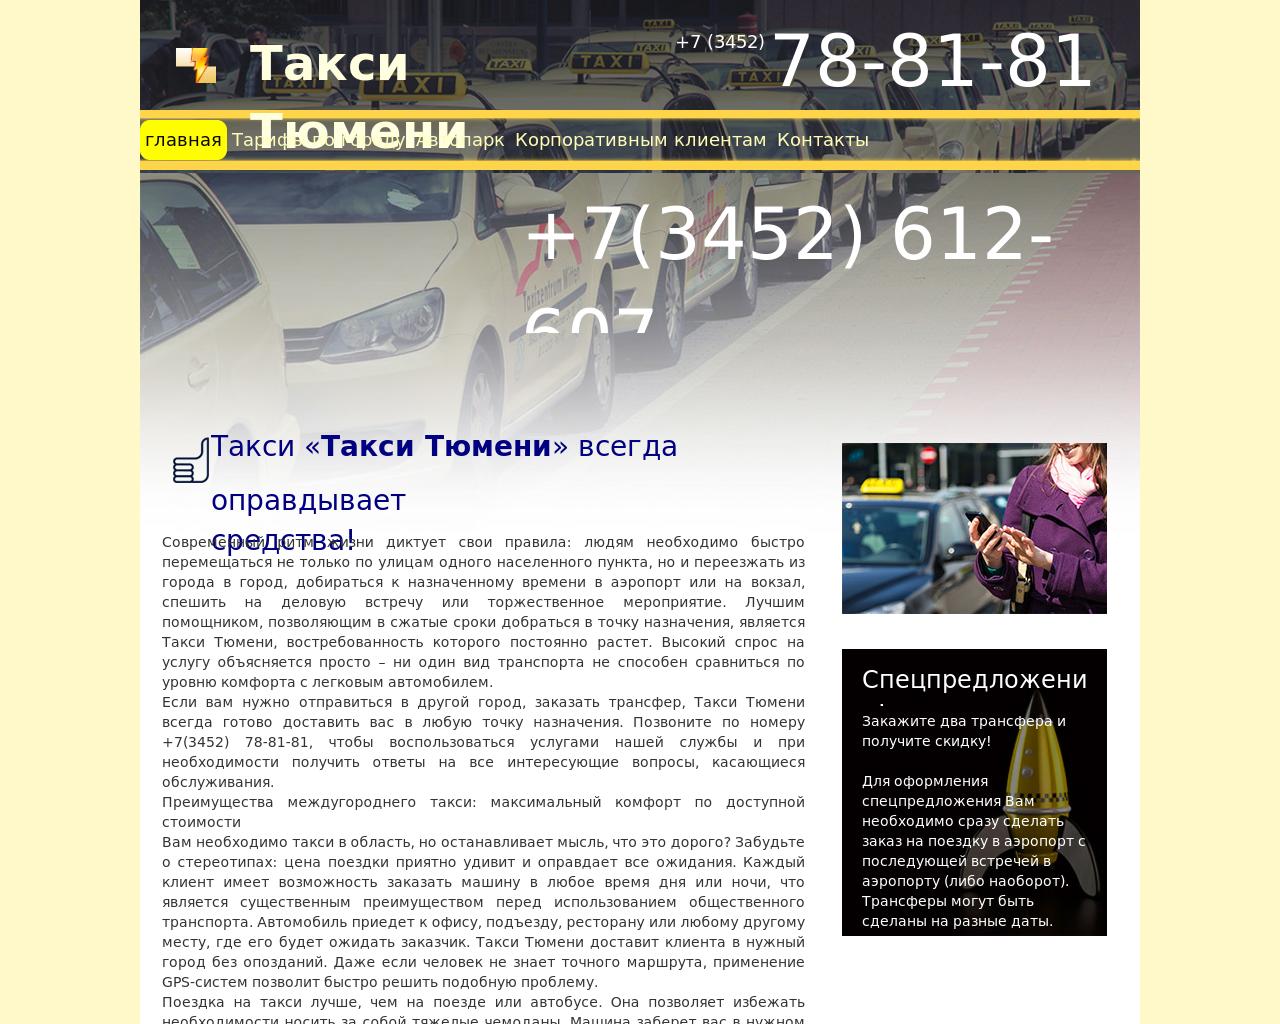 Изображение сайта такси-тюмени.рф в разрешении 1280x1024